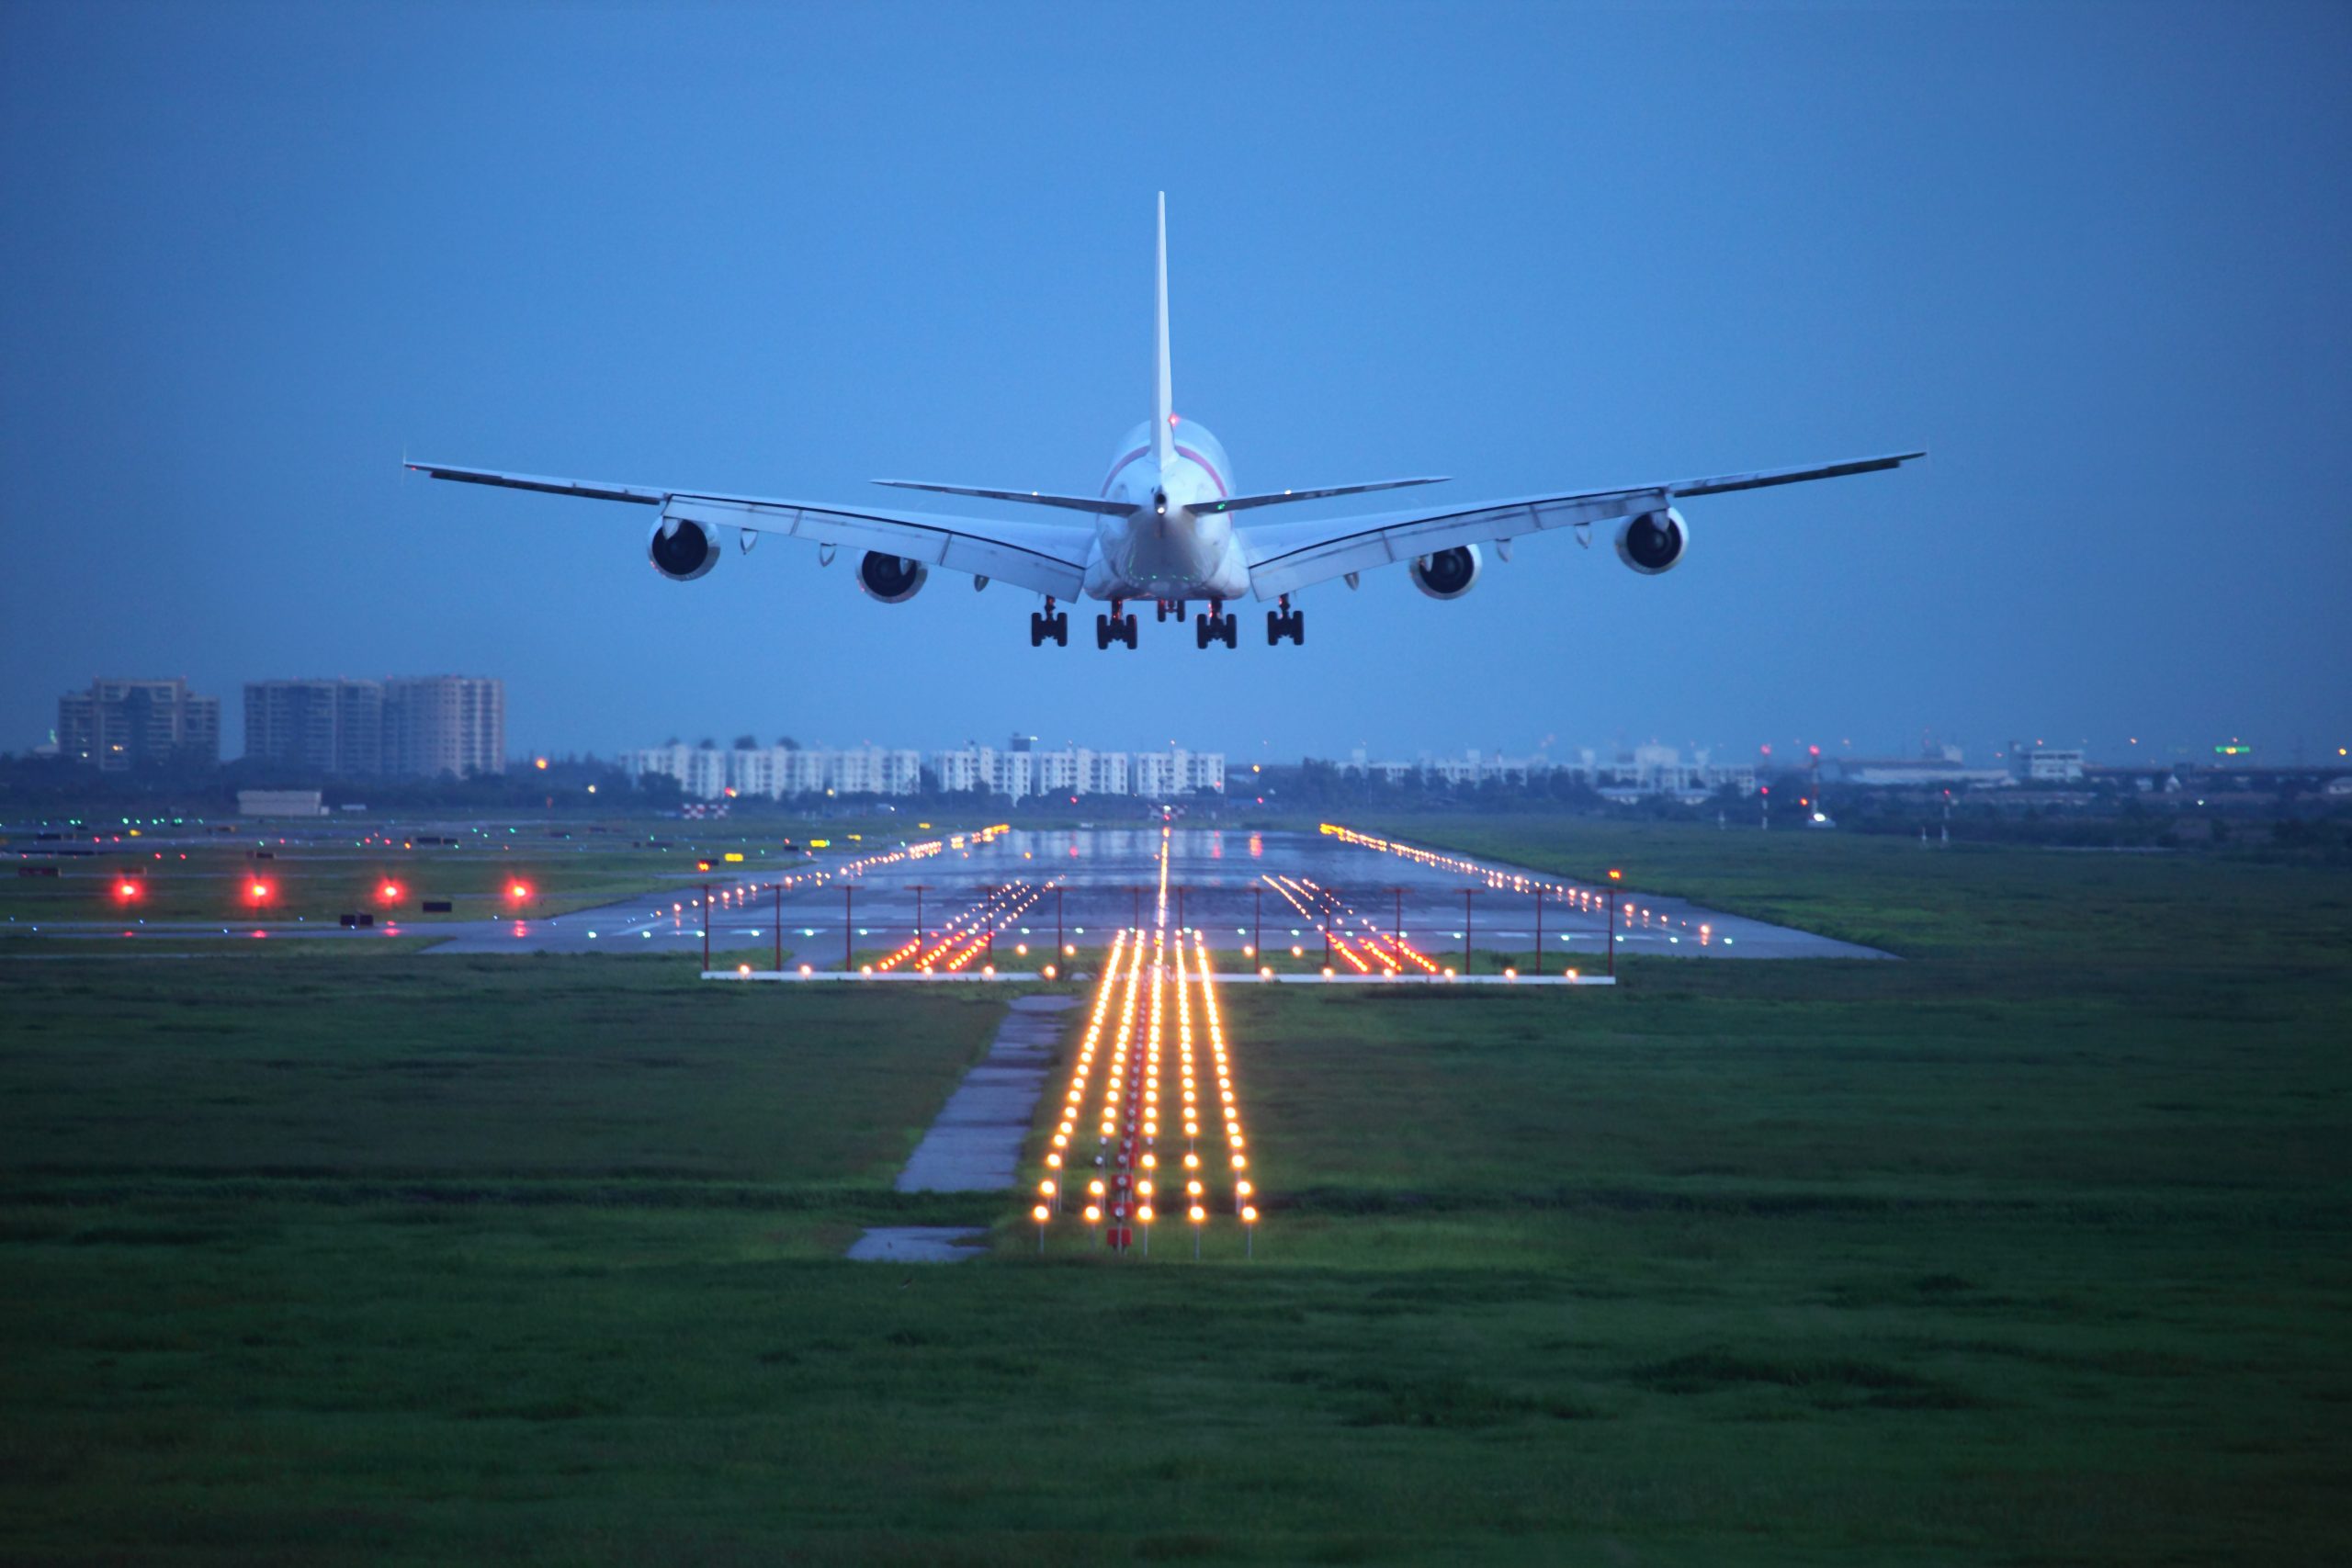 Debatt: ”Flygskatten är en grön bluff som borde tas bort!”